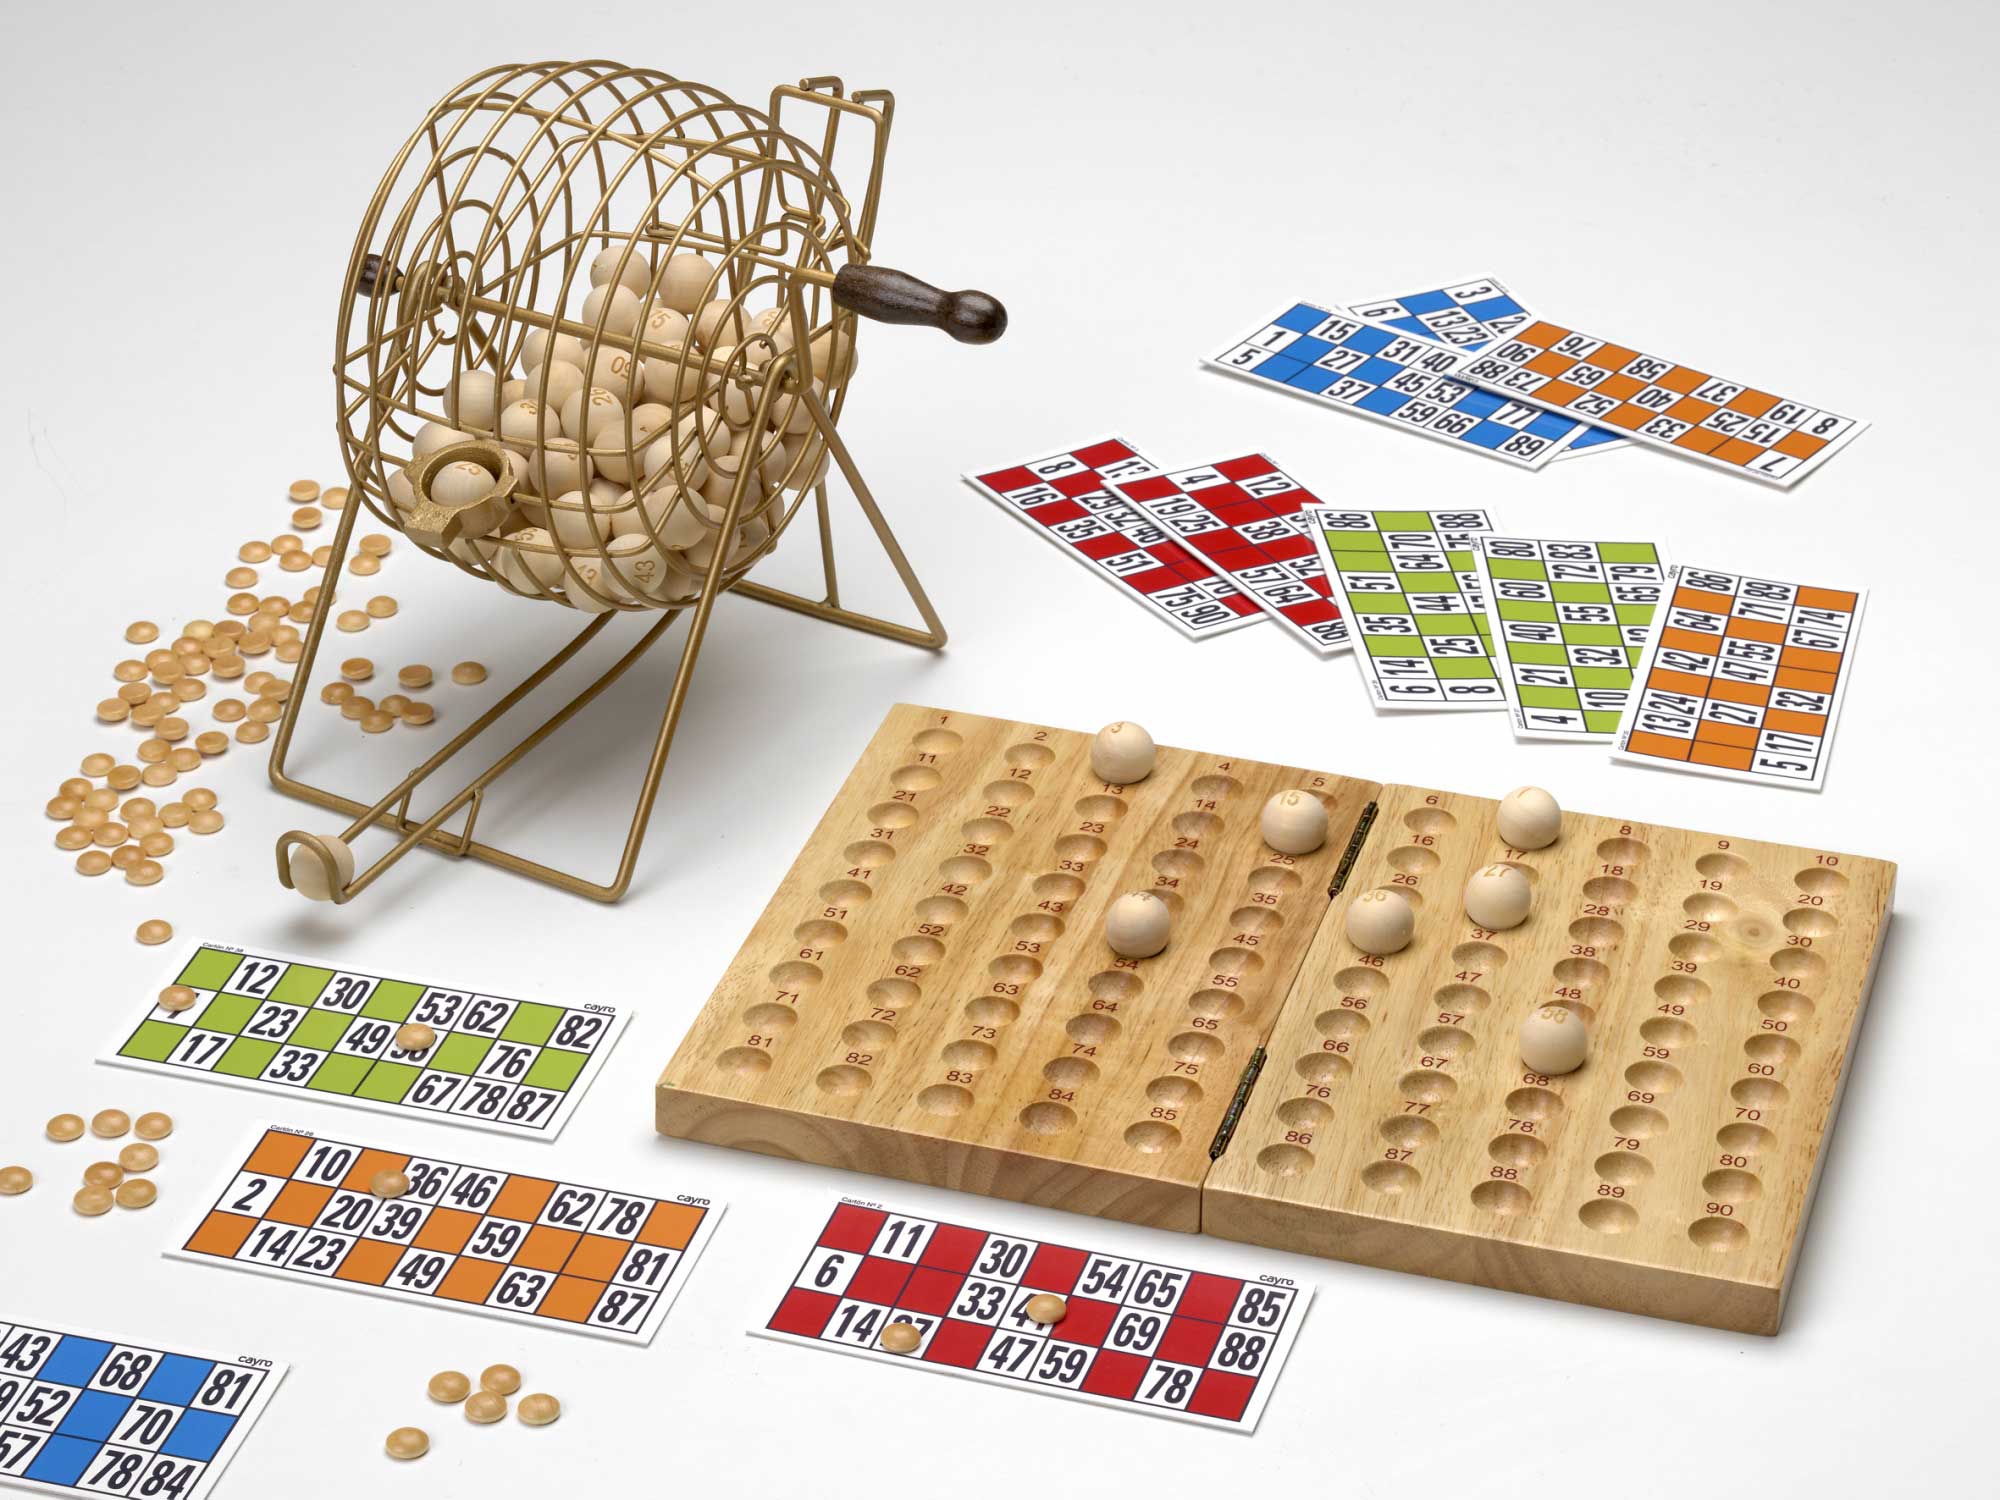 jeu de table bingo. barils de loto en bois avec sac, cartes à